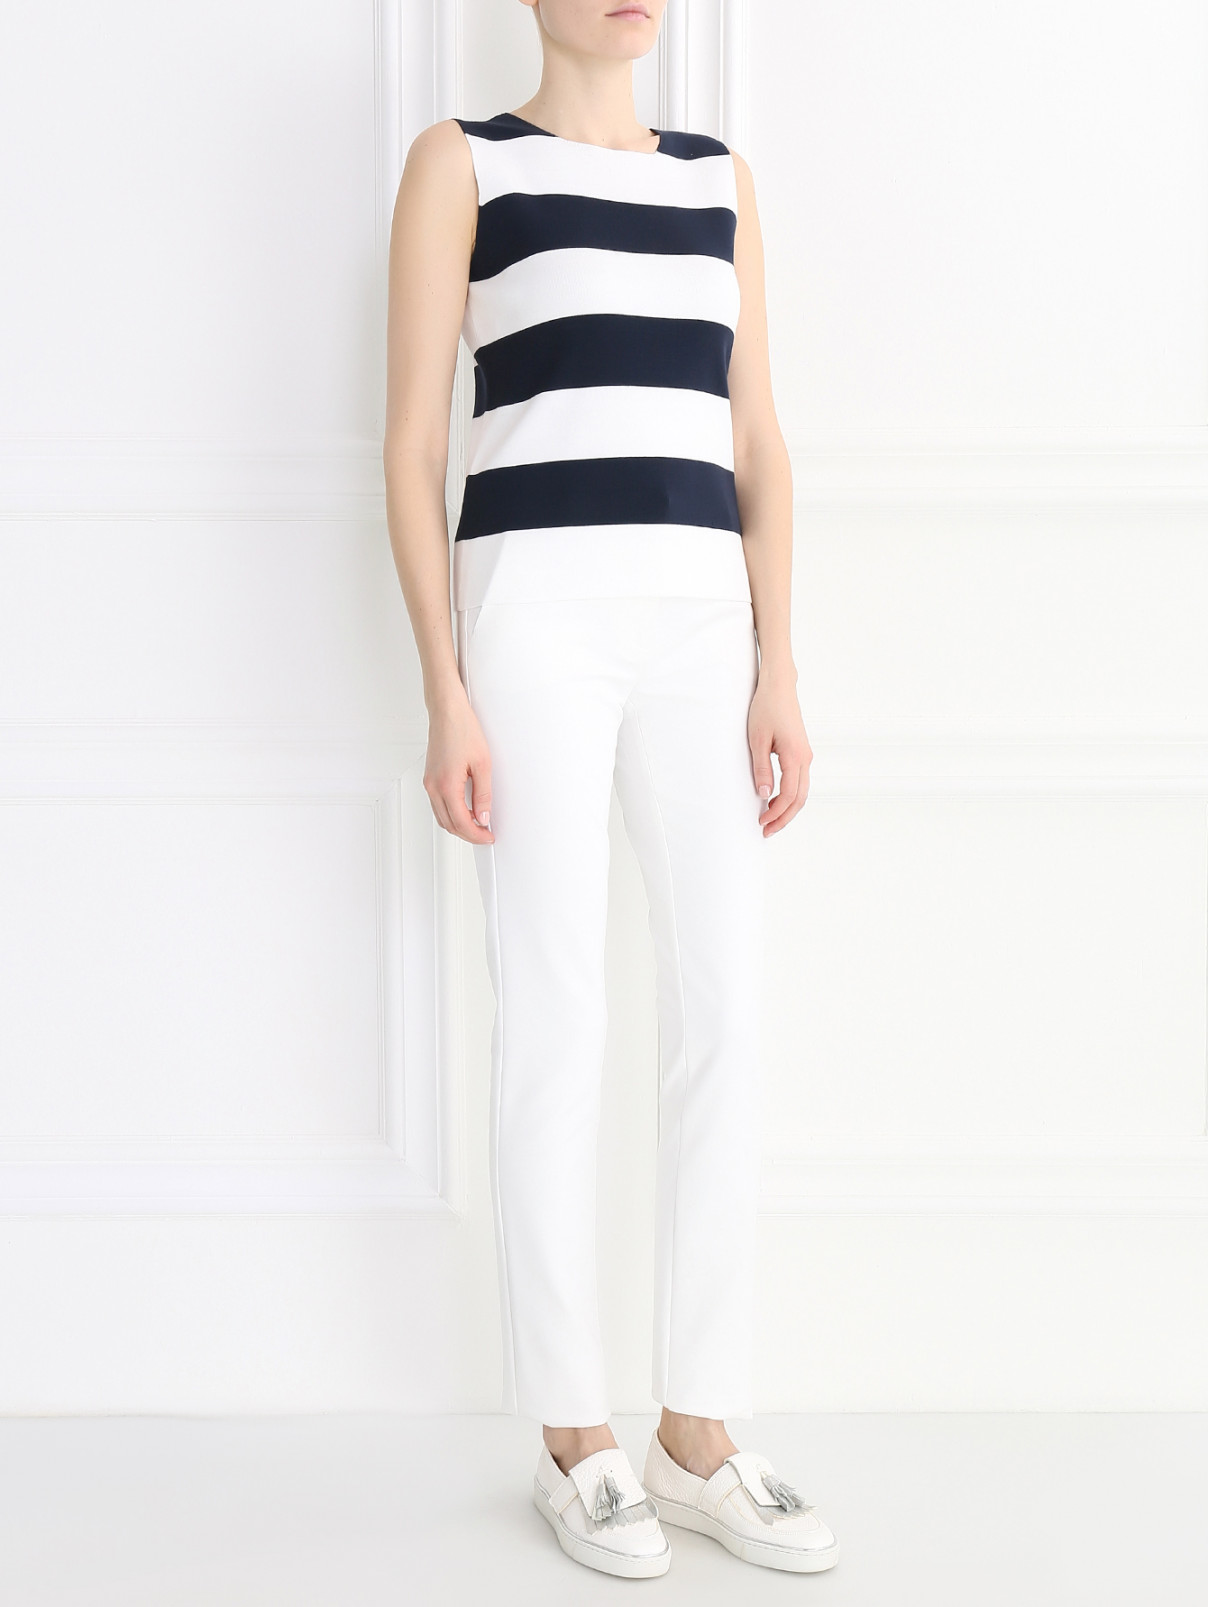 Узкие брюки из хлопка и нейлона Sportmax  –  Модель Общий вид  – Цвет:  Белый